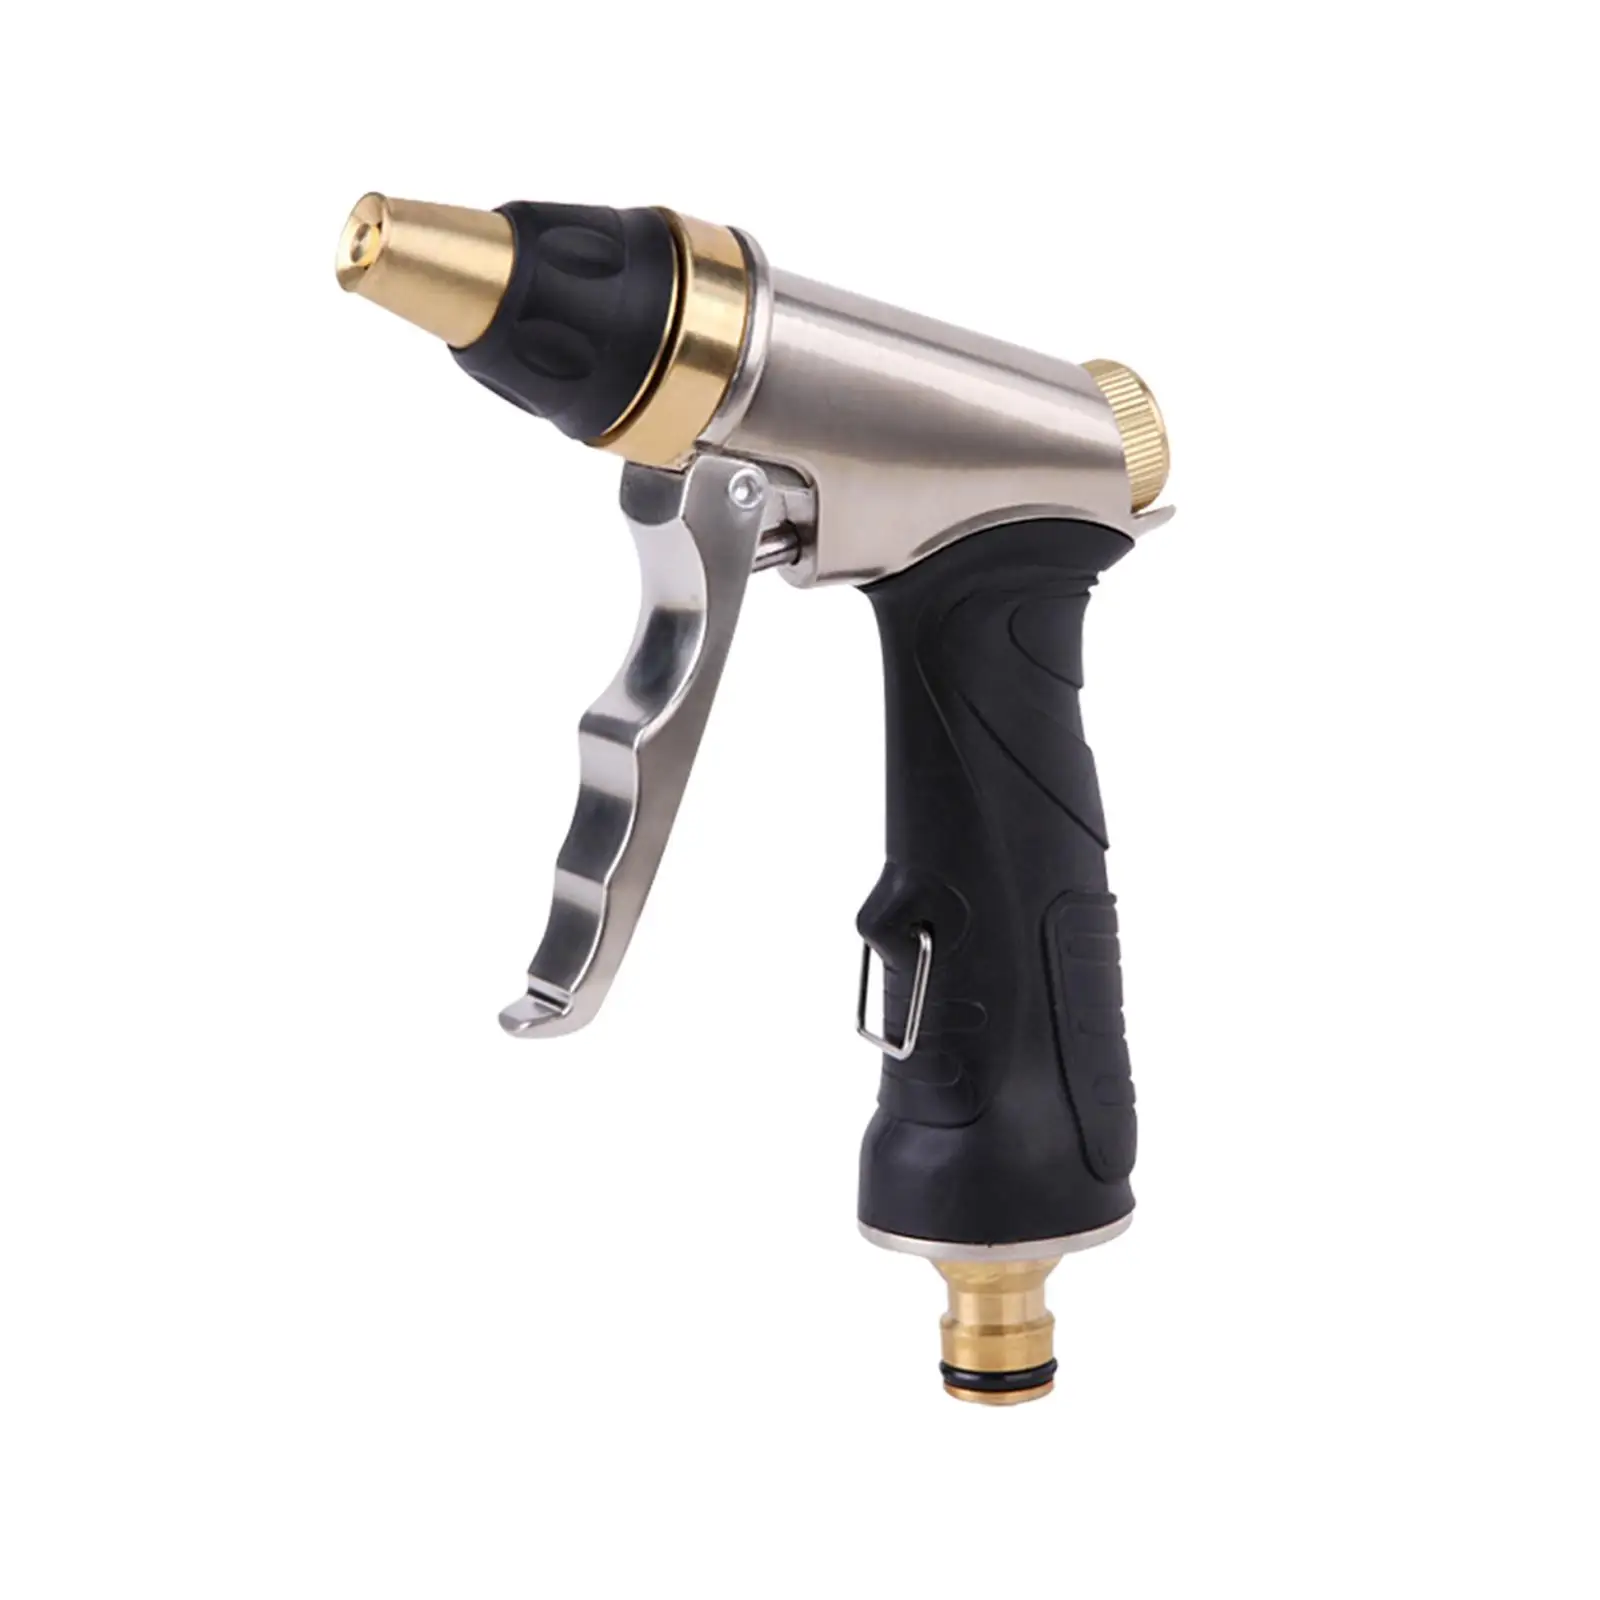 Garden Sprayer Adjustable Attachment Pressure Washer Spray Replacement Parts